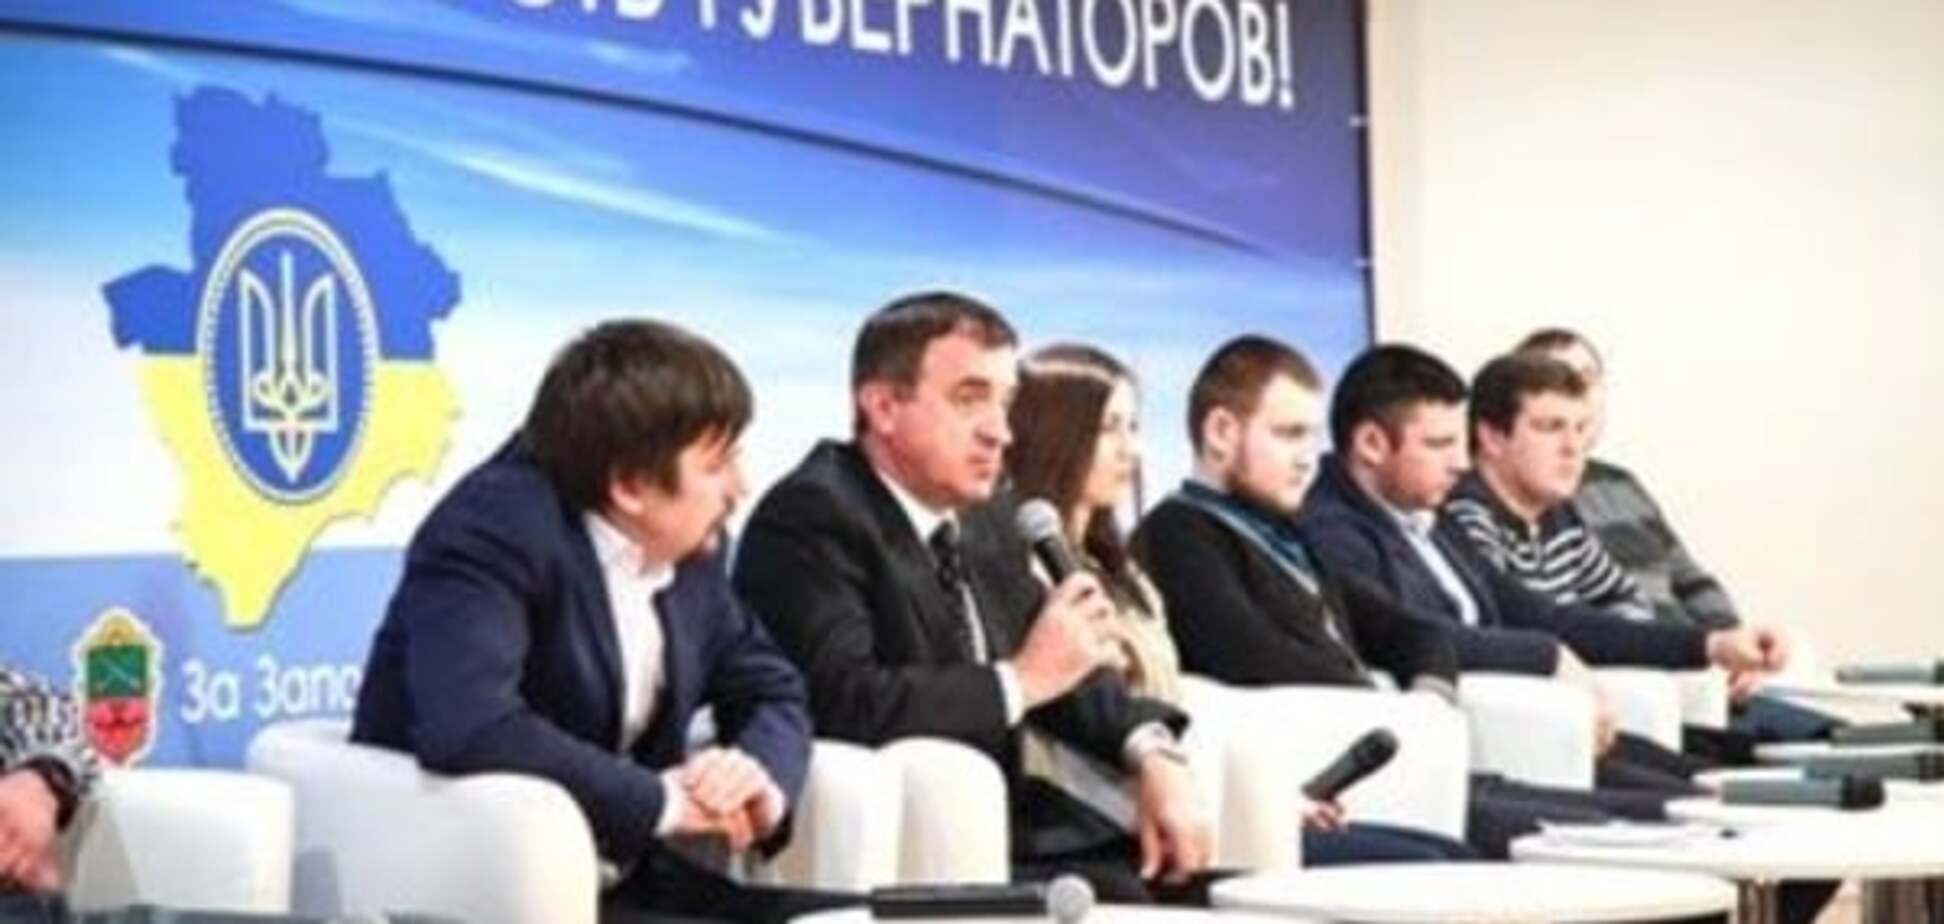 Запорожские депутаты поддержали введение выборности губернаторов в Украине